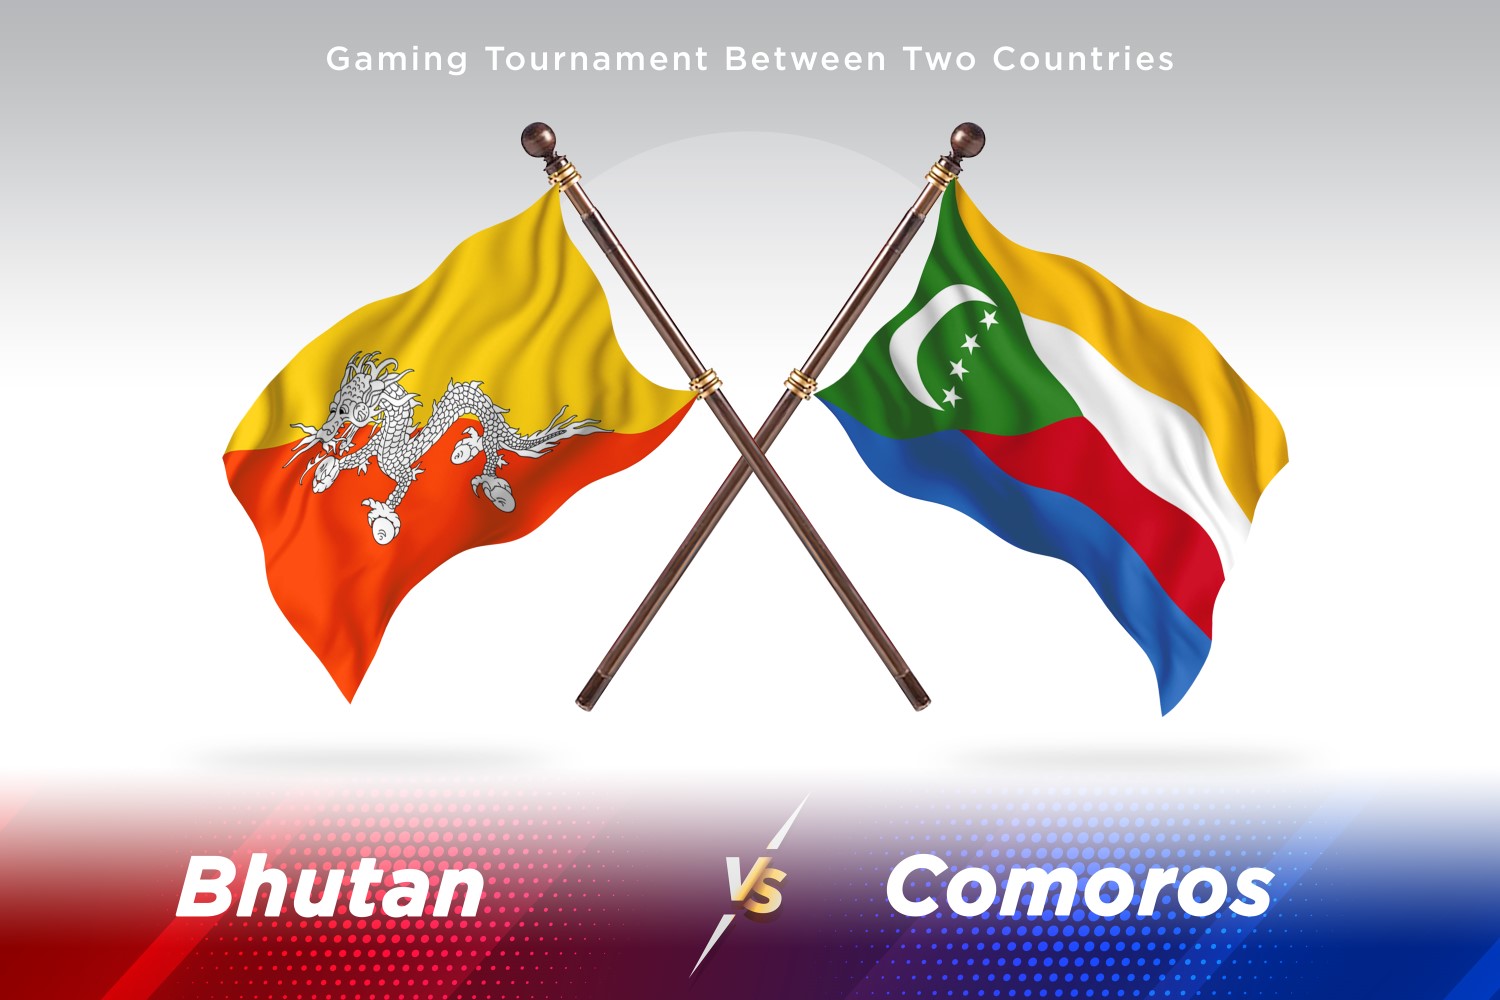 Bhutan versus Comoros Two Flags